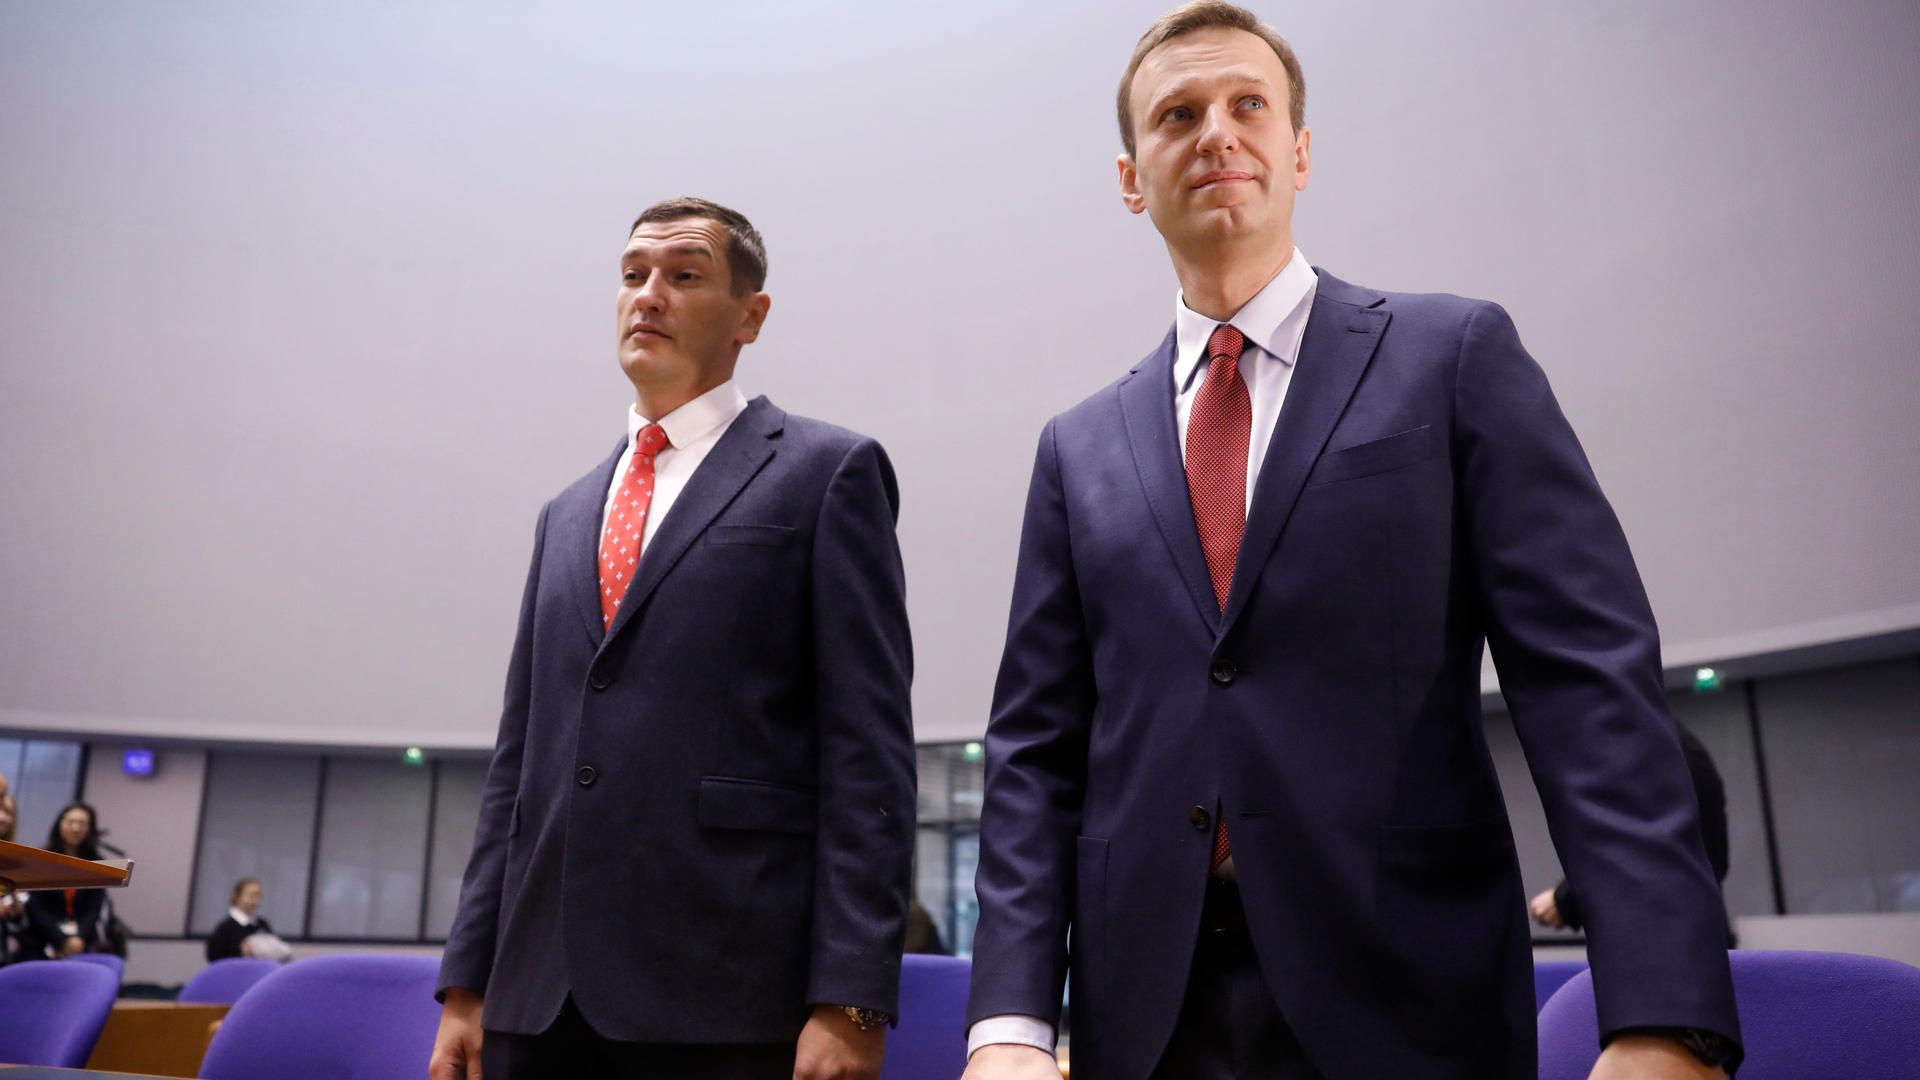 Der russische Oppositionsführer Alexej Nawalny (r) und sein Bruder Oleg stehen während seiner Anhörung vor dem Europäischen Gerichtshof für Menschenrechte. Der russische Oppositionspolitiker Alexej Nawalny ist nach Angaben der Justiz in Haft gestorben.